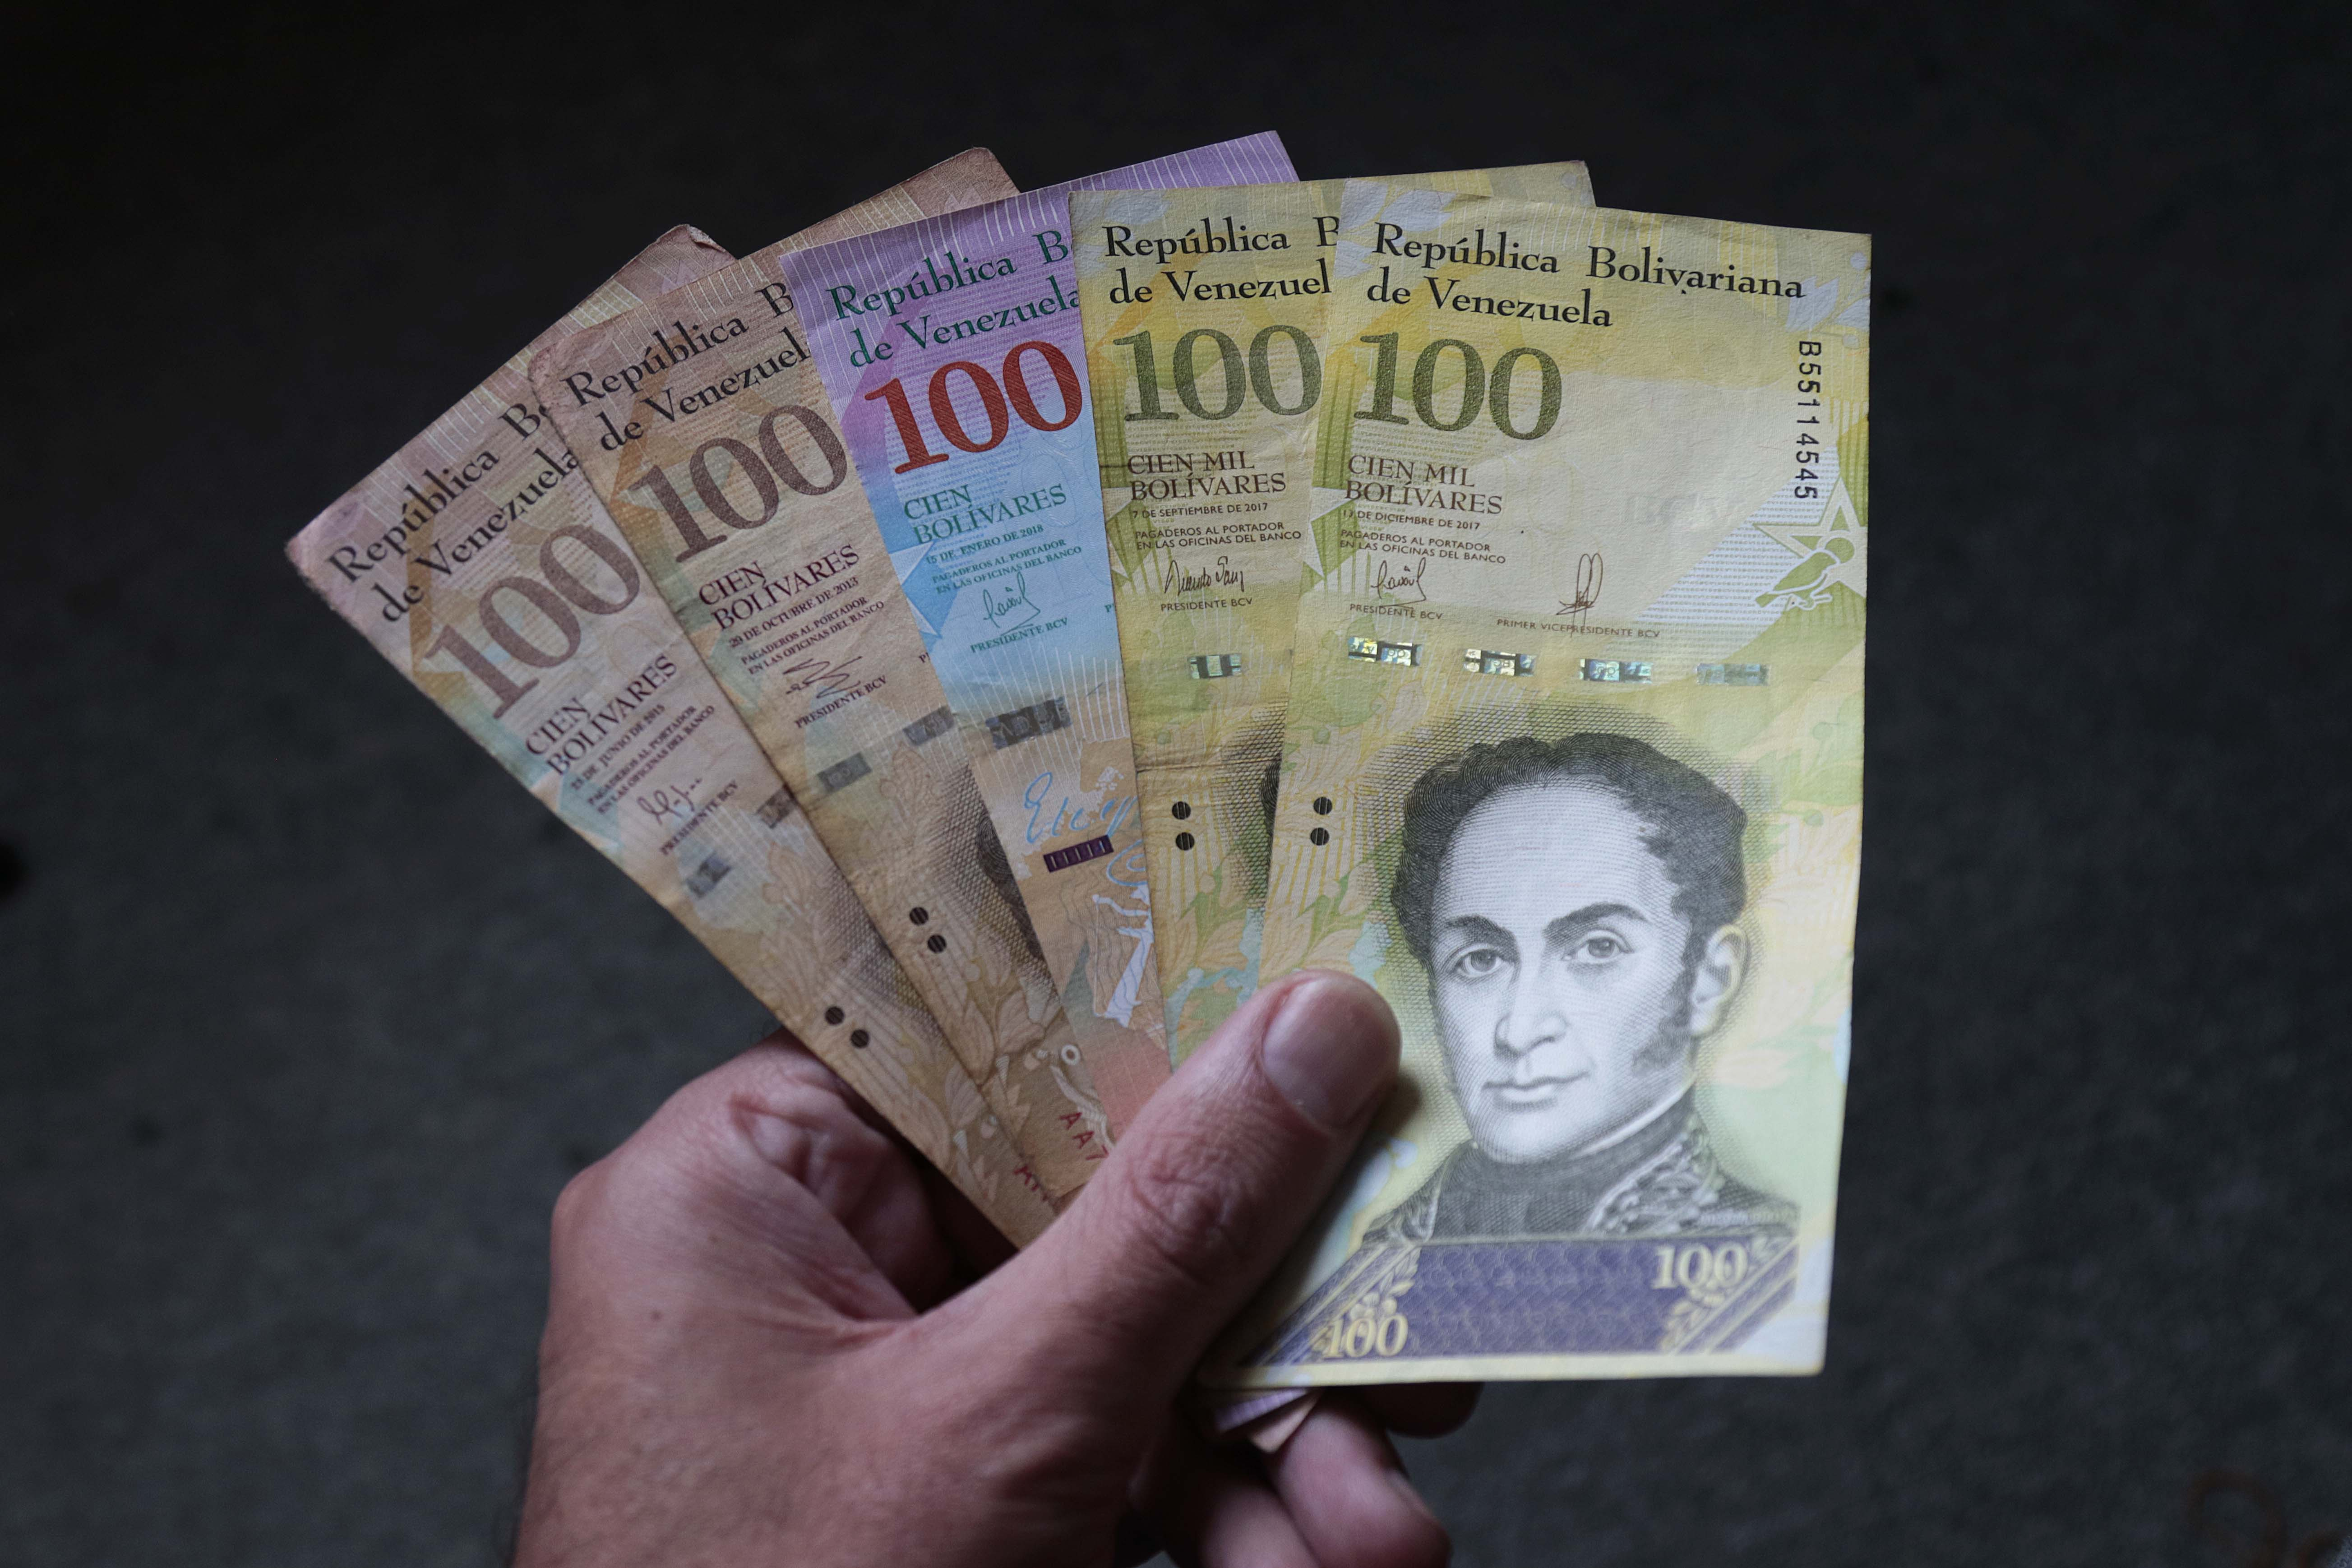 El bolívar se encuentra en constante devaluación, según los reportes actualizados del Banco Central de Venezuela (BCV). Foto: Semana